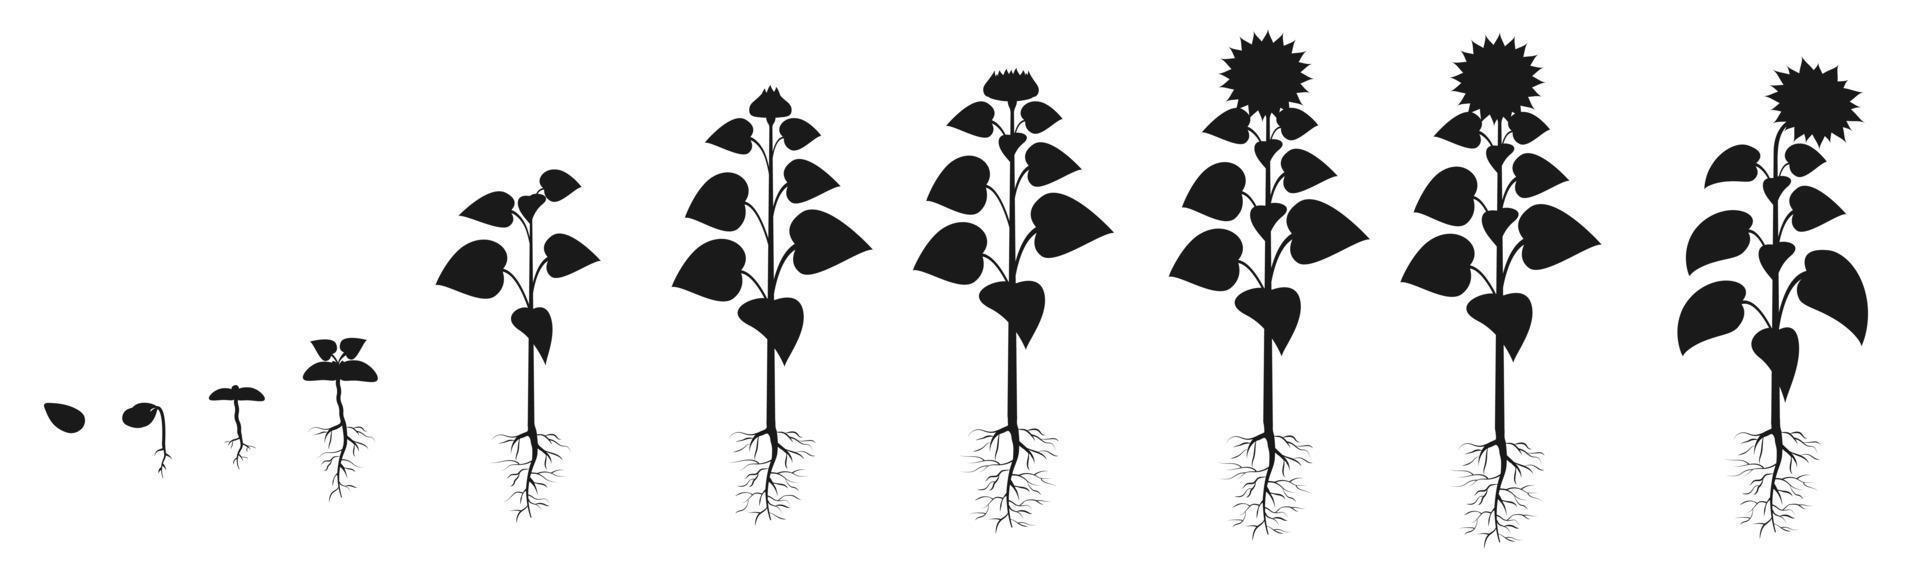 cycle de vie du tournesol en agriculture. silhouette des stades de croissance des plantes. infographie sur la culture des graines vecteur